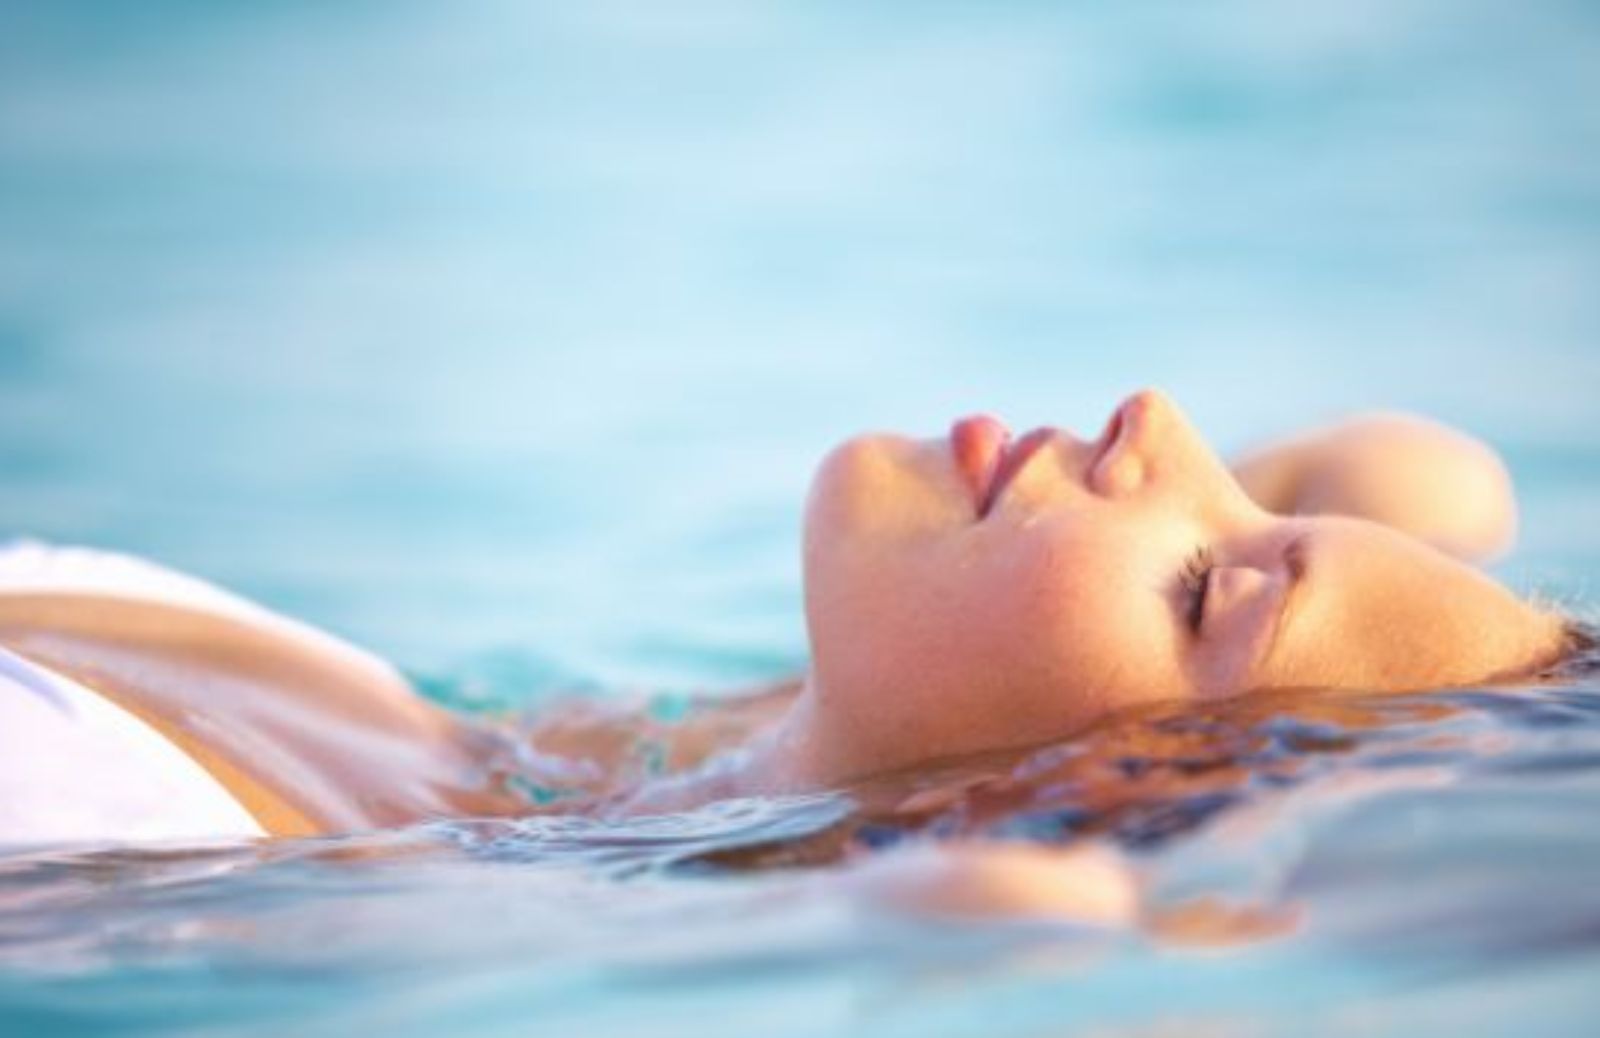 Come rilassarsi con la floating therapy: la terapia del galleggiamento